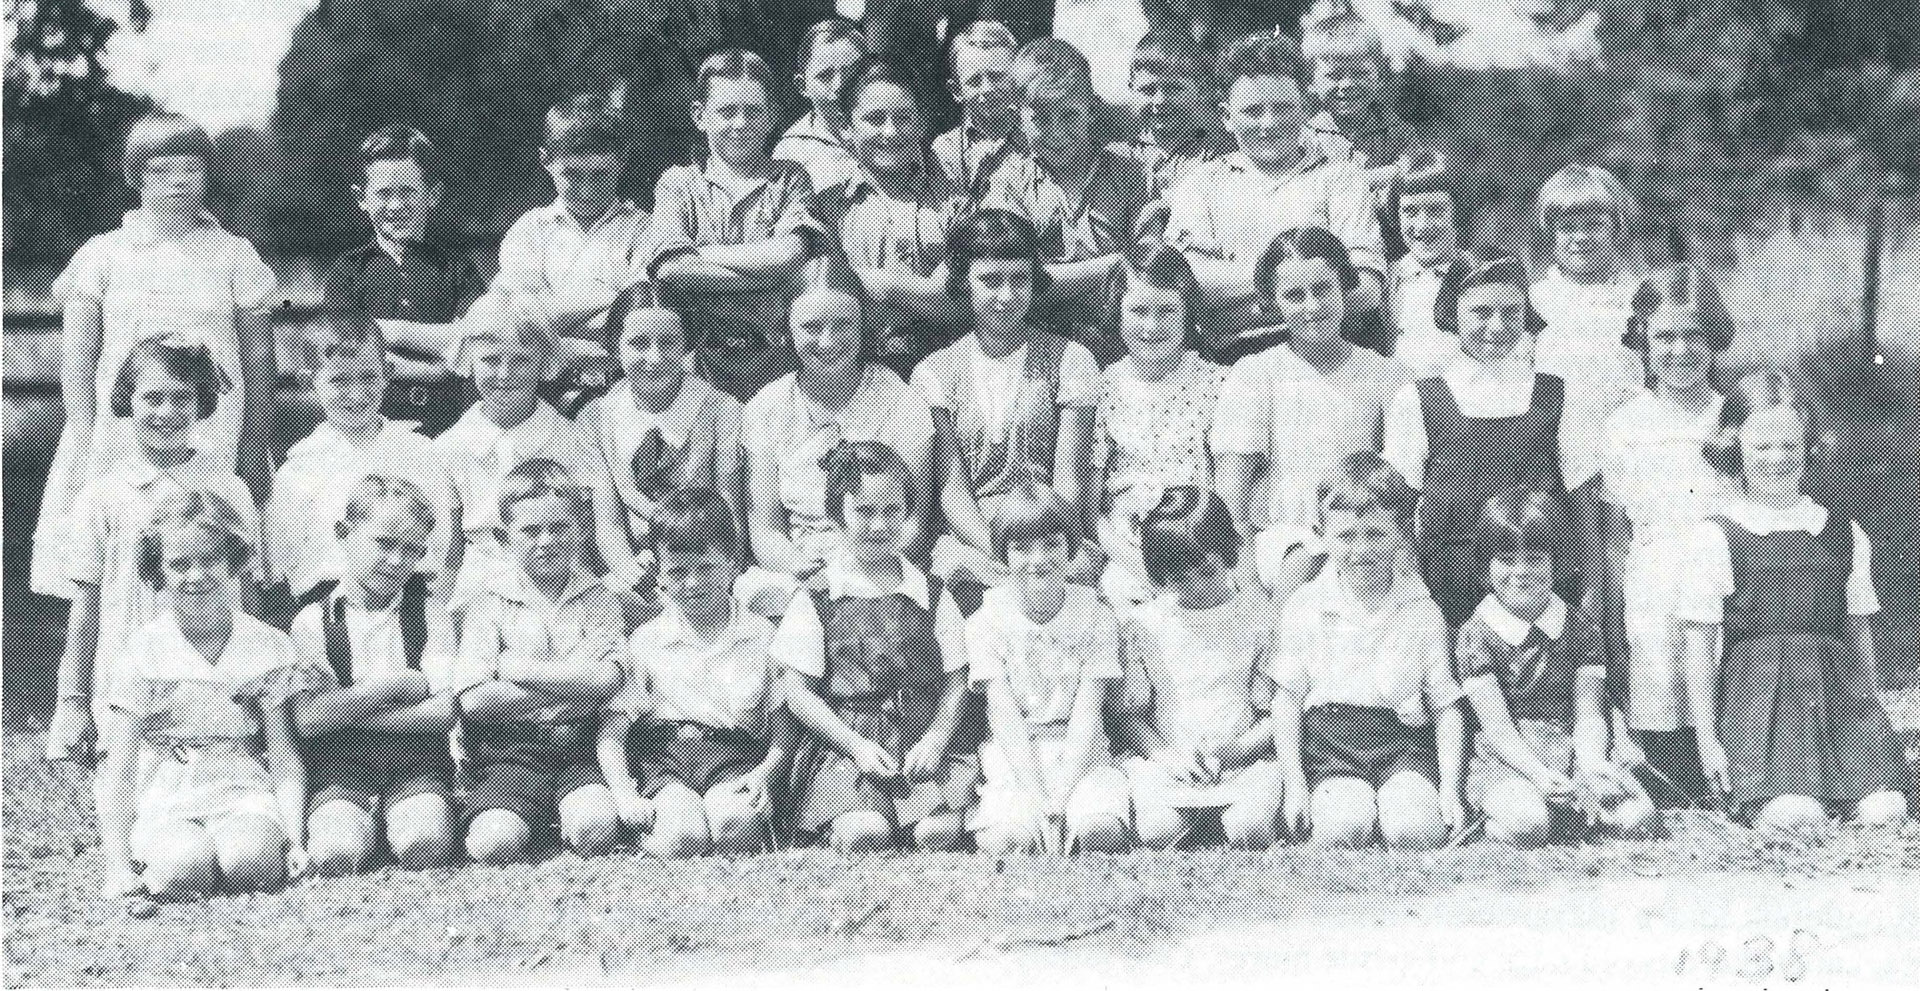 Eureka school 1938